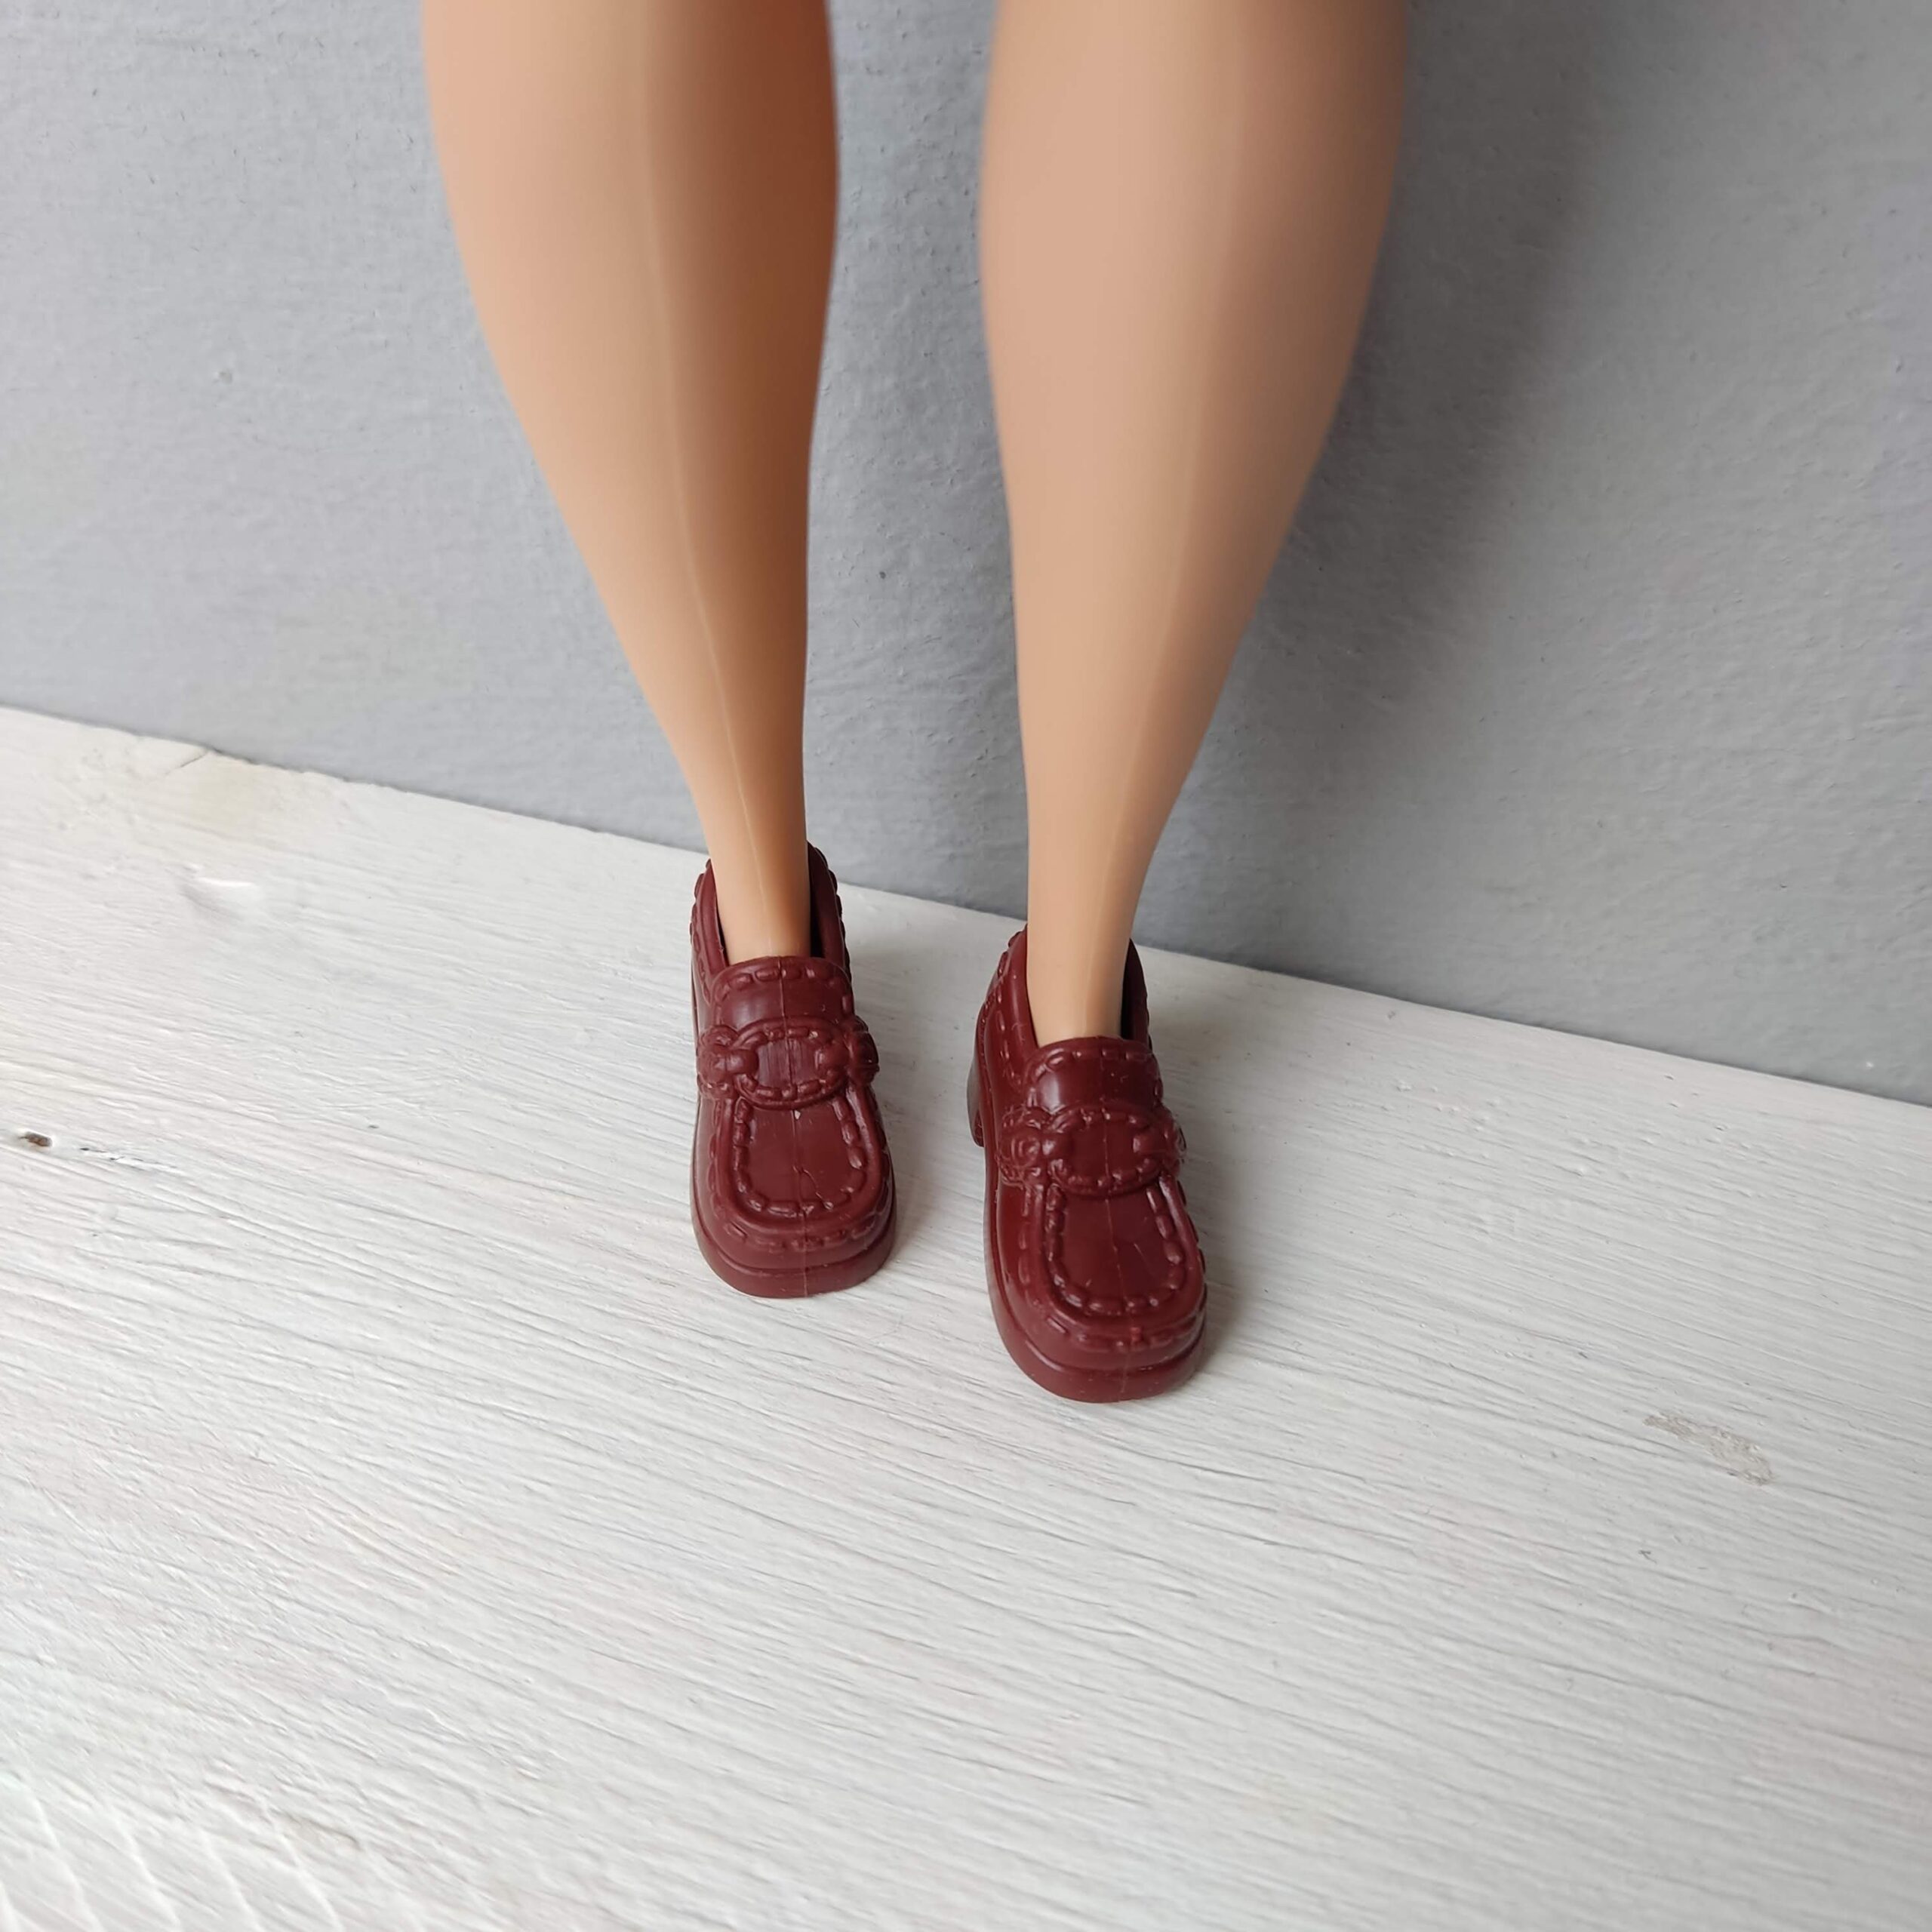 Barbie shoes, Barbie curvy boots - DailyDoll Shop